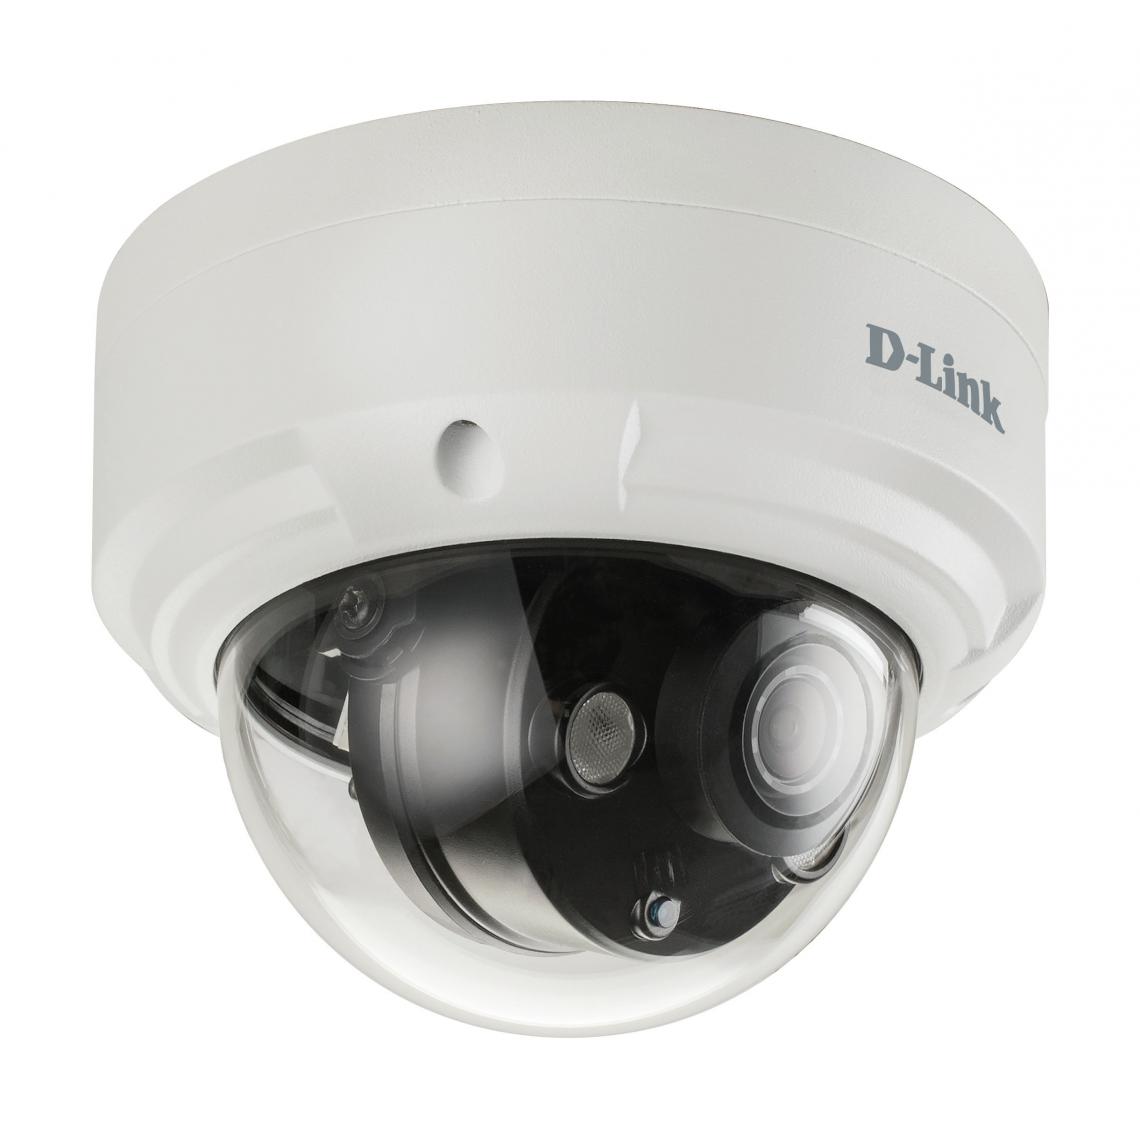 Dlink - DCS-4612EK - Caméra de surveillance connectée